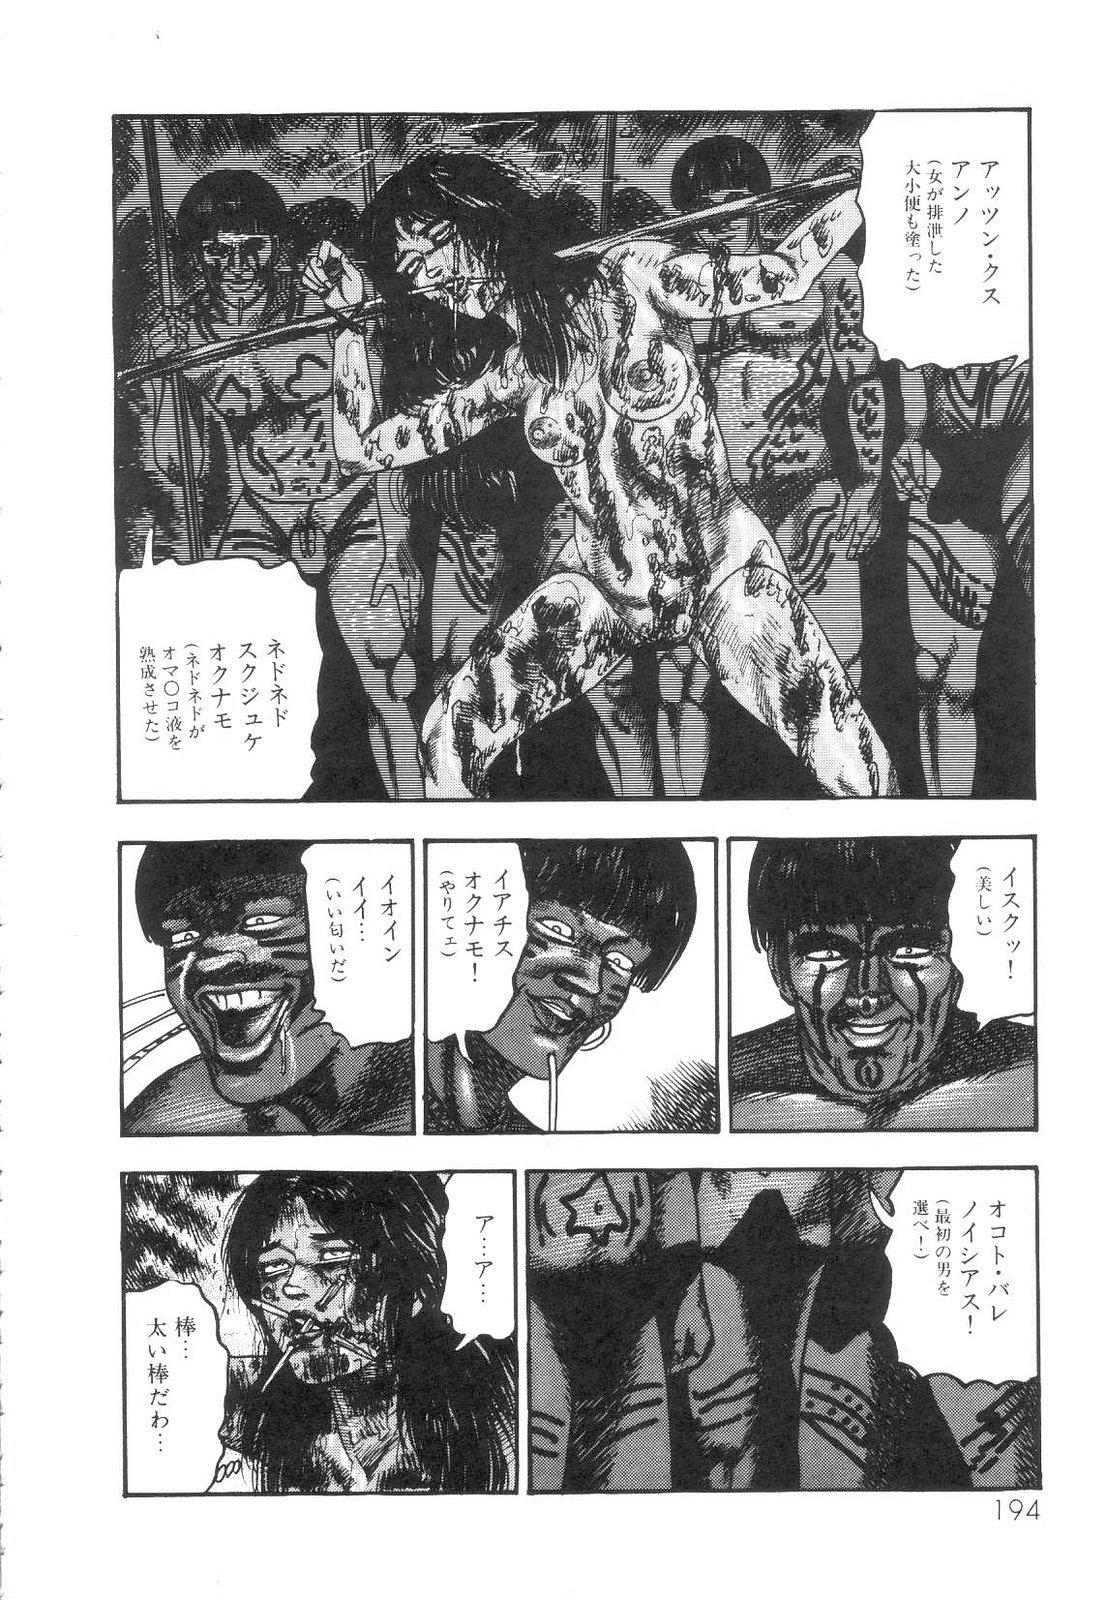 Shiro no Mokushiroku Vol. 1 - Sei Shojo Shion no Shou 194